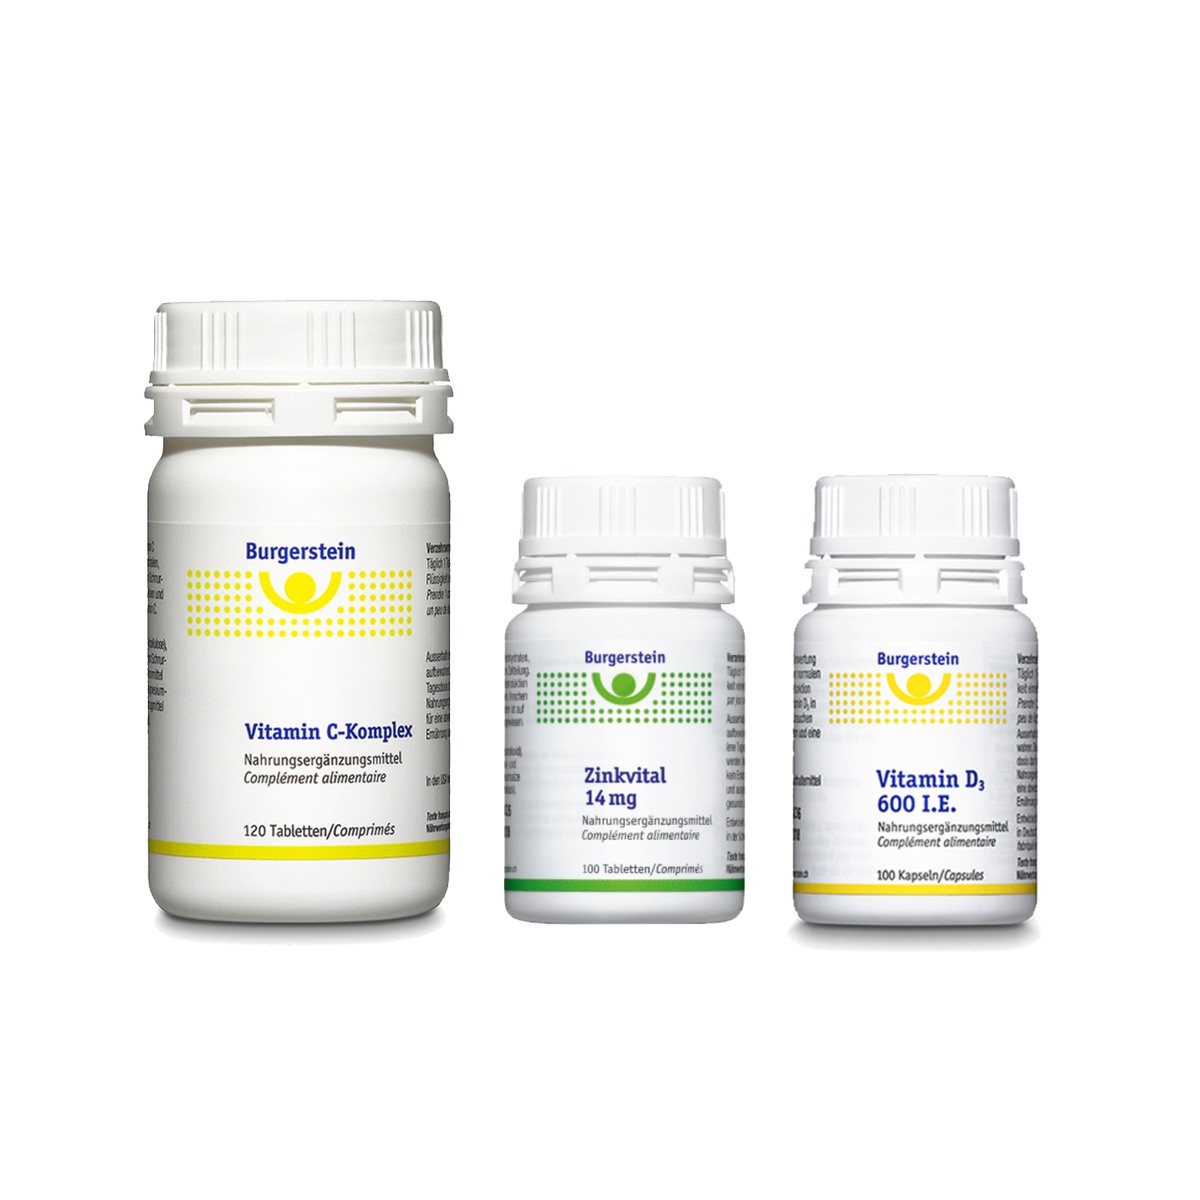 Burgerstein Vitamin C-Komplex, Zinkvital und Vitamin D3 als Winter Trio kaufen